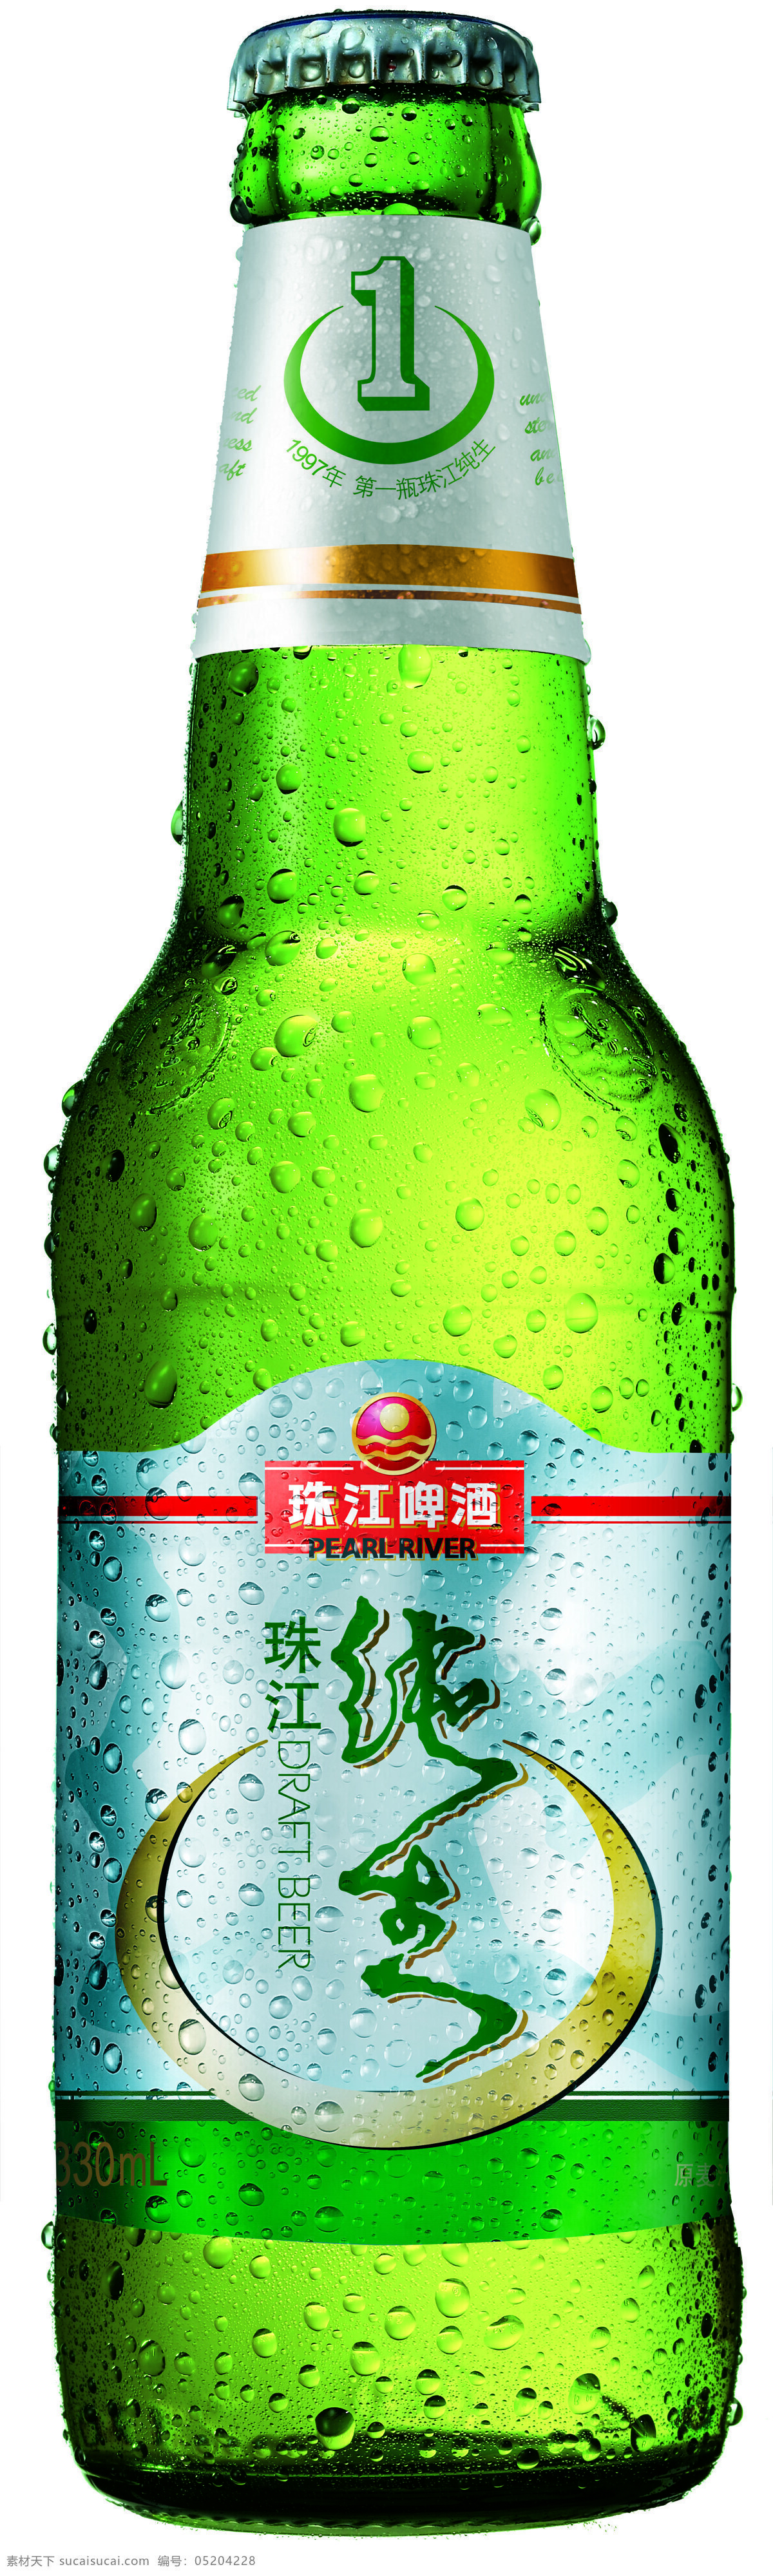 纯 生啤 酒瓶 纯生 啤酒 瓶 珠江 设计素材 模板下载 纯生啤酒瓶 矢量图 日常生活